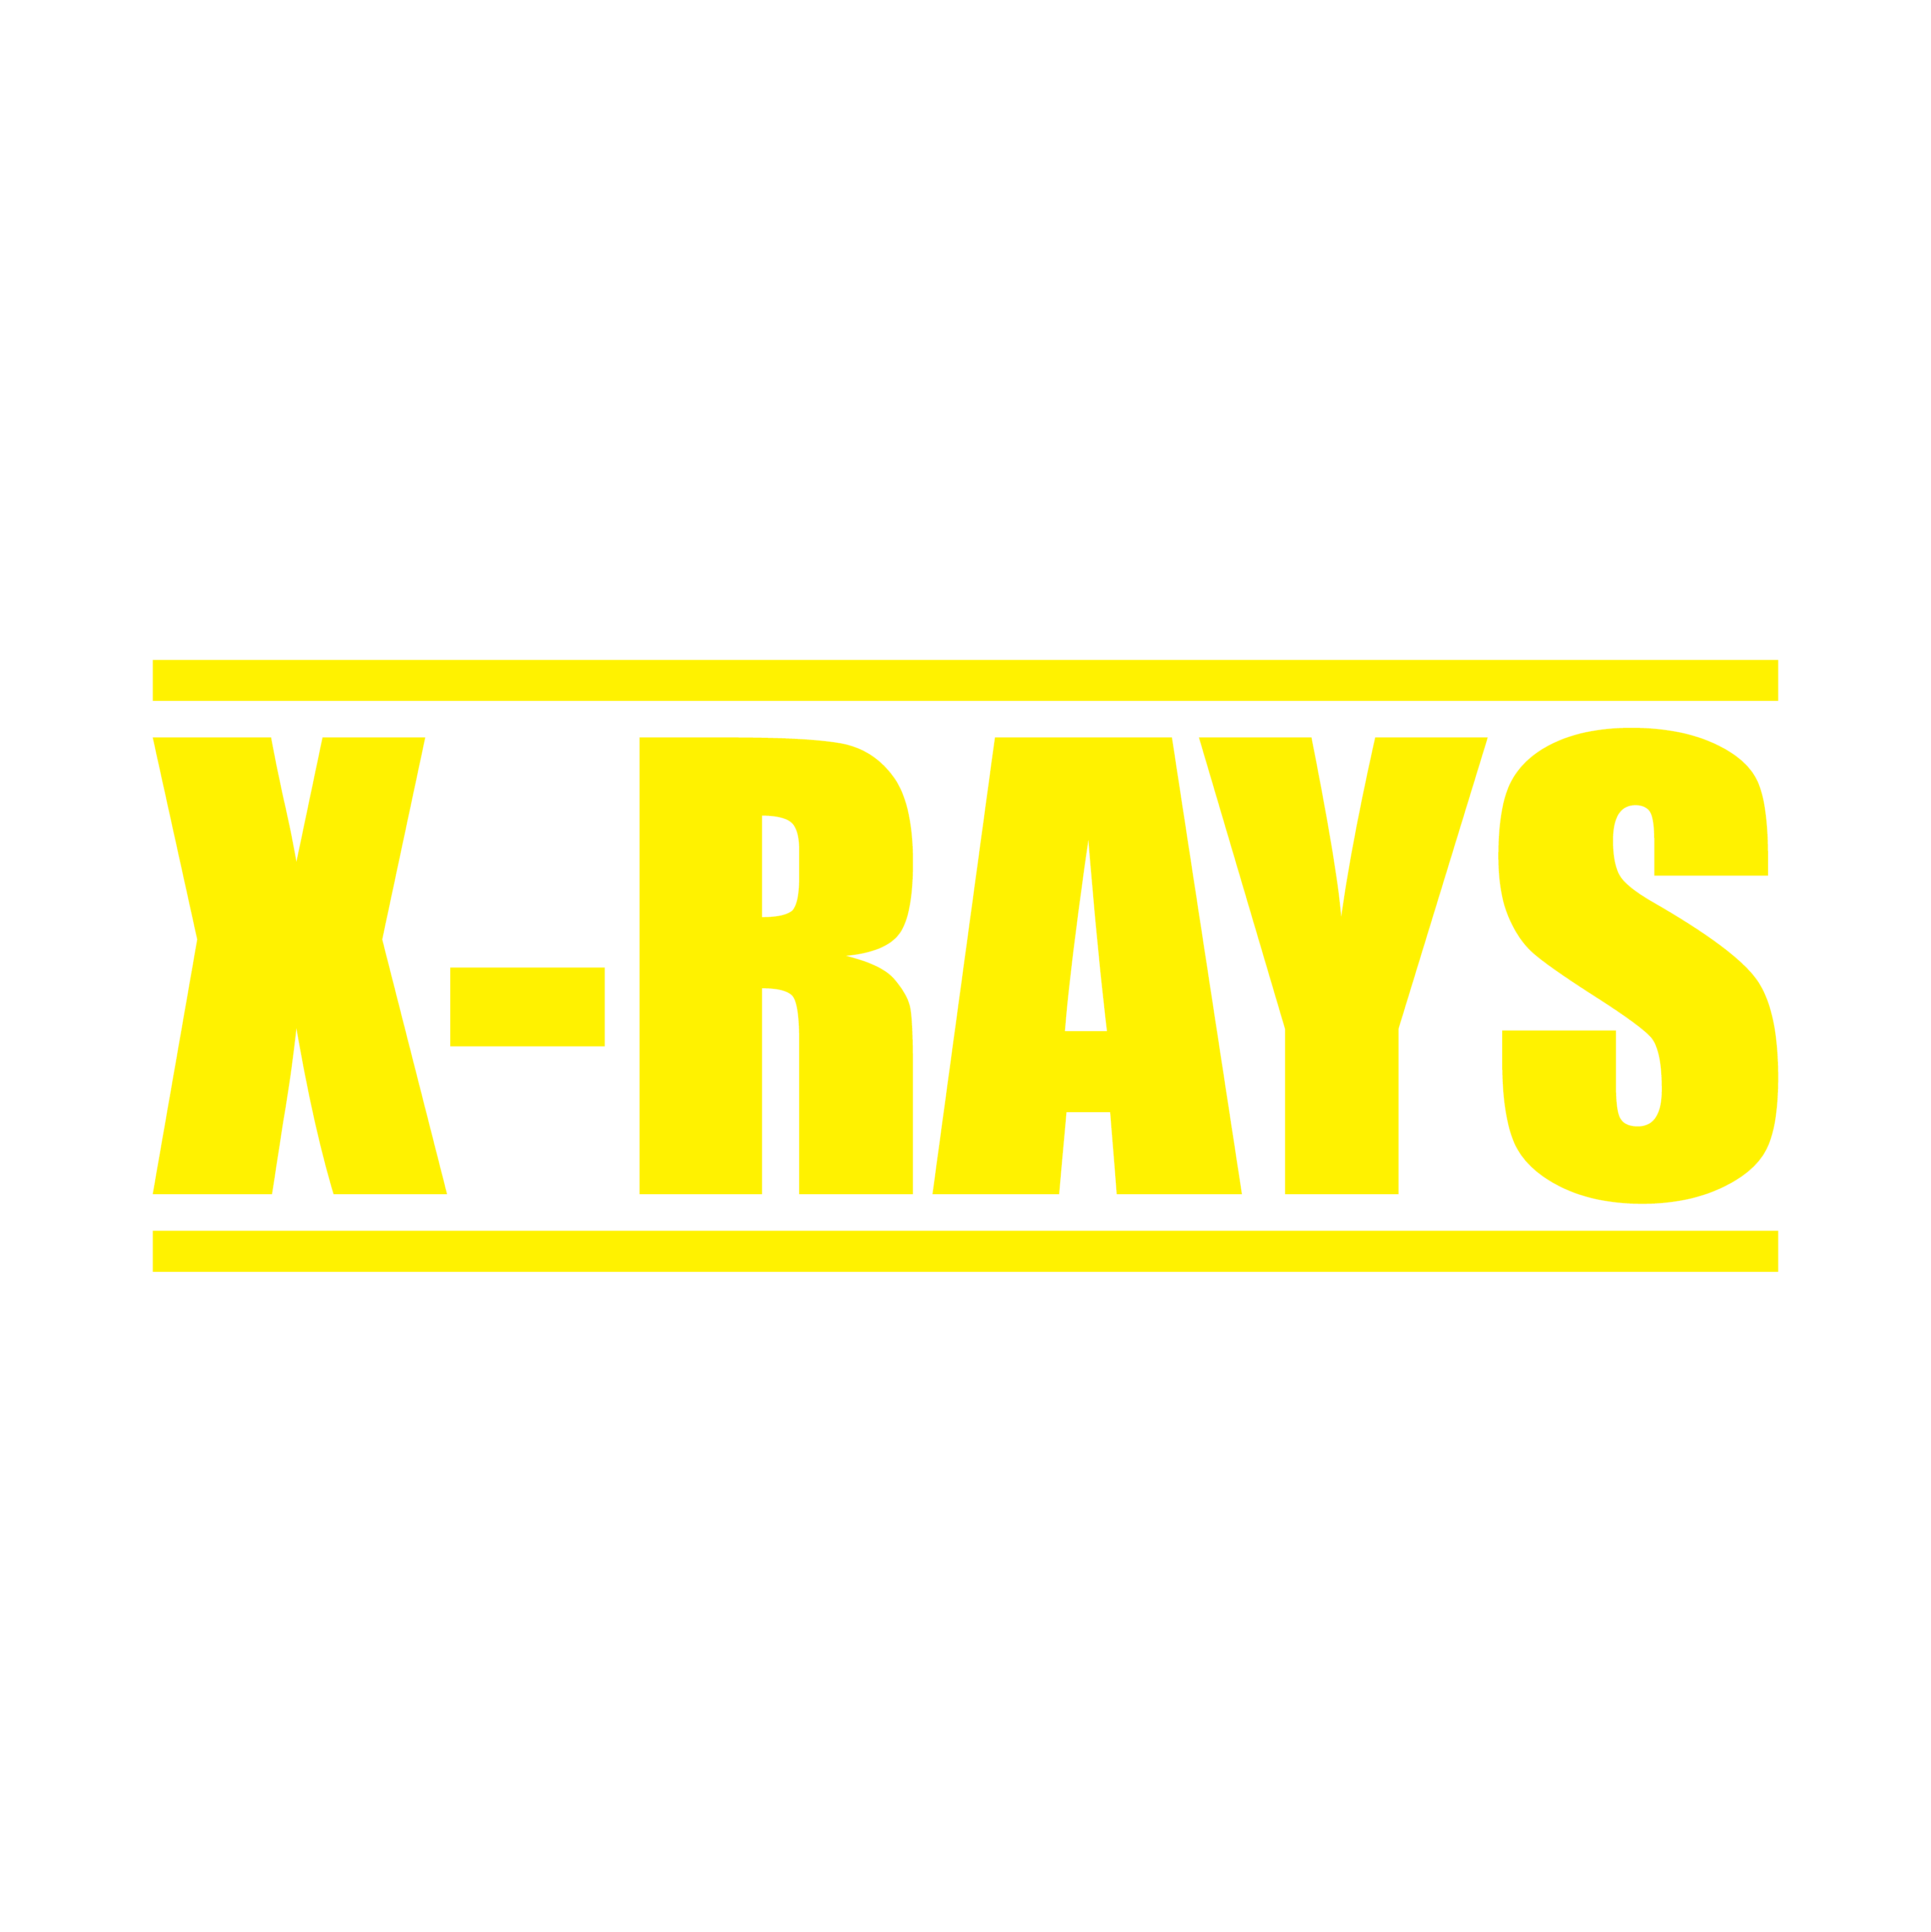 Yellow X-Ray Stamp